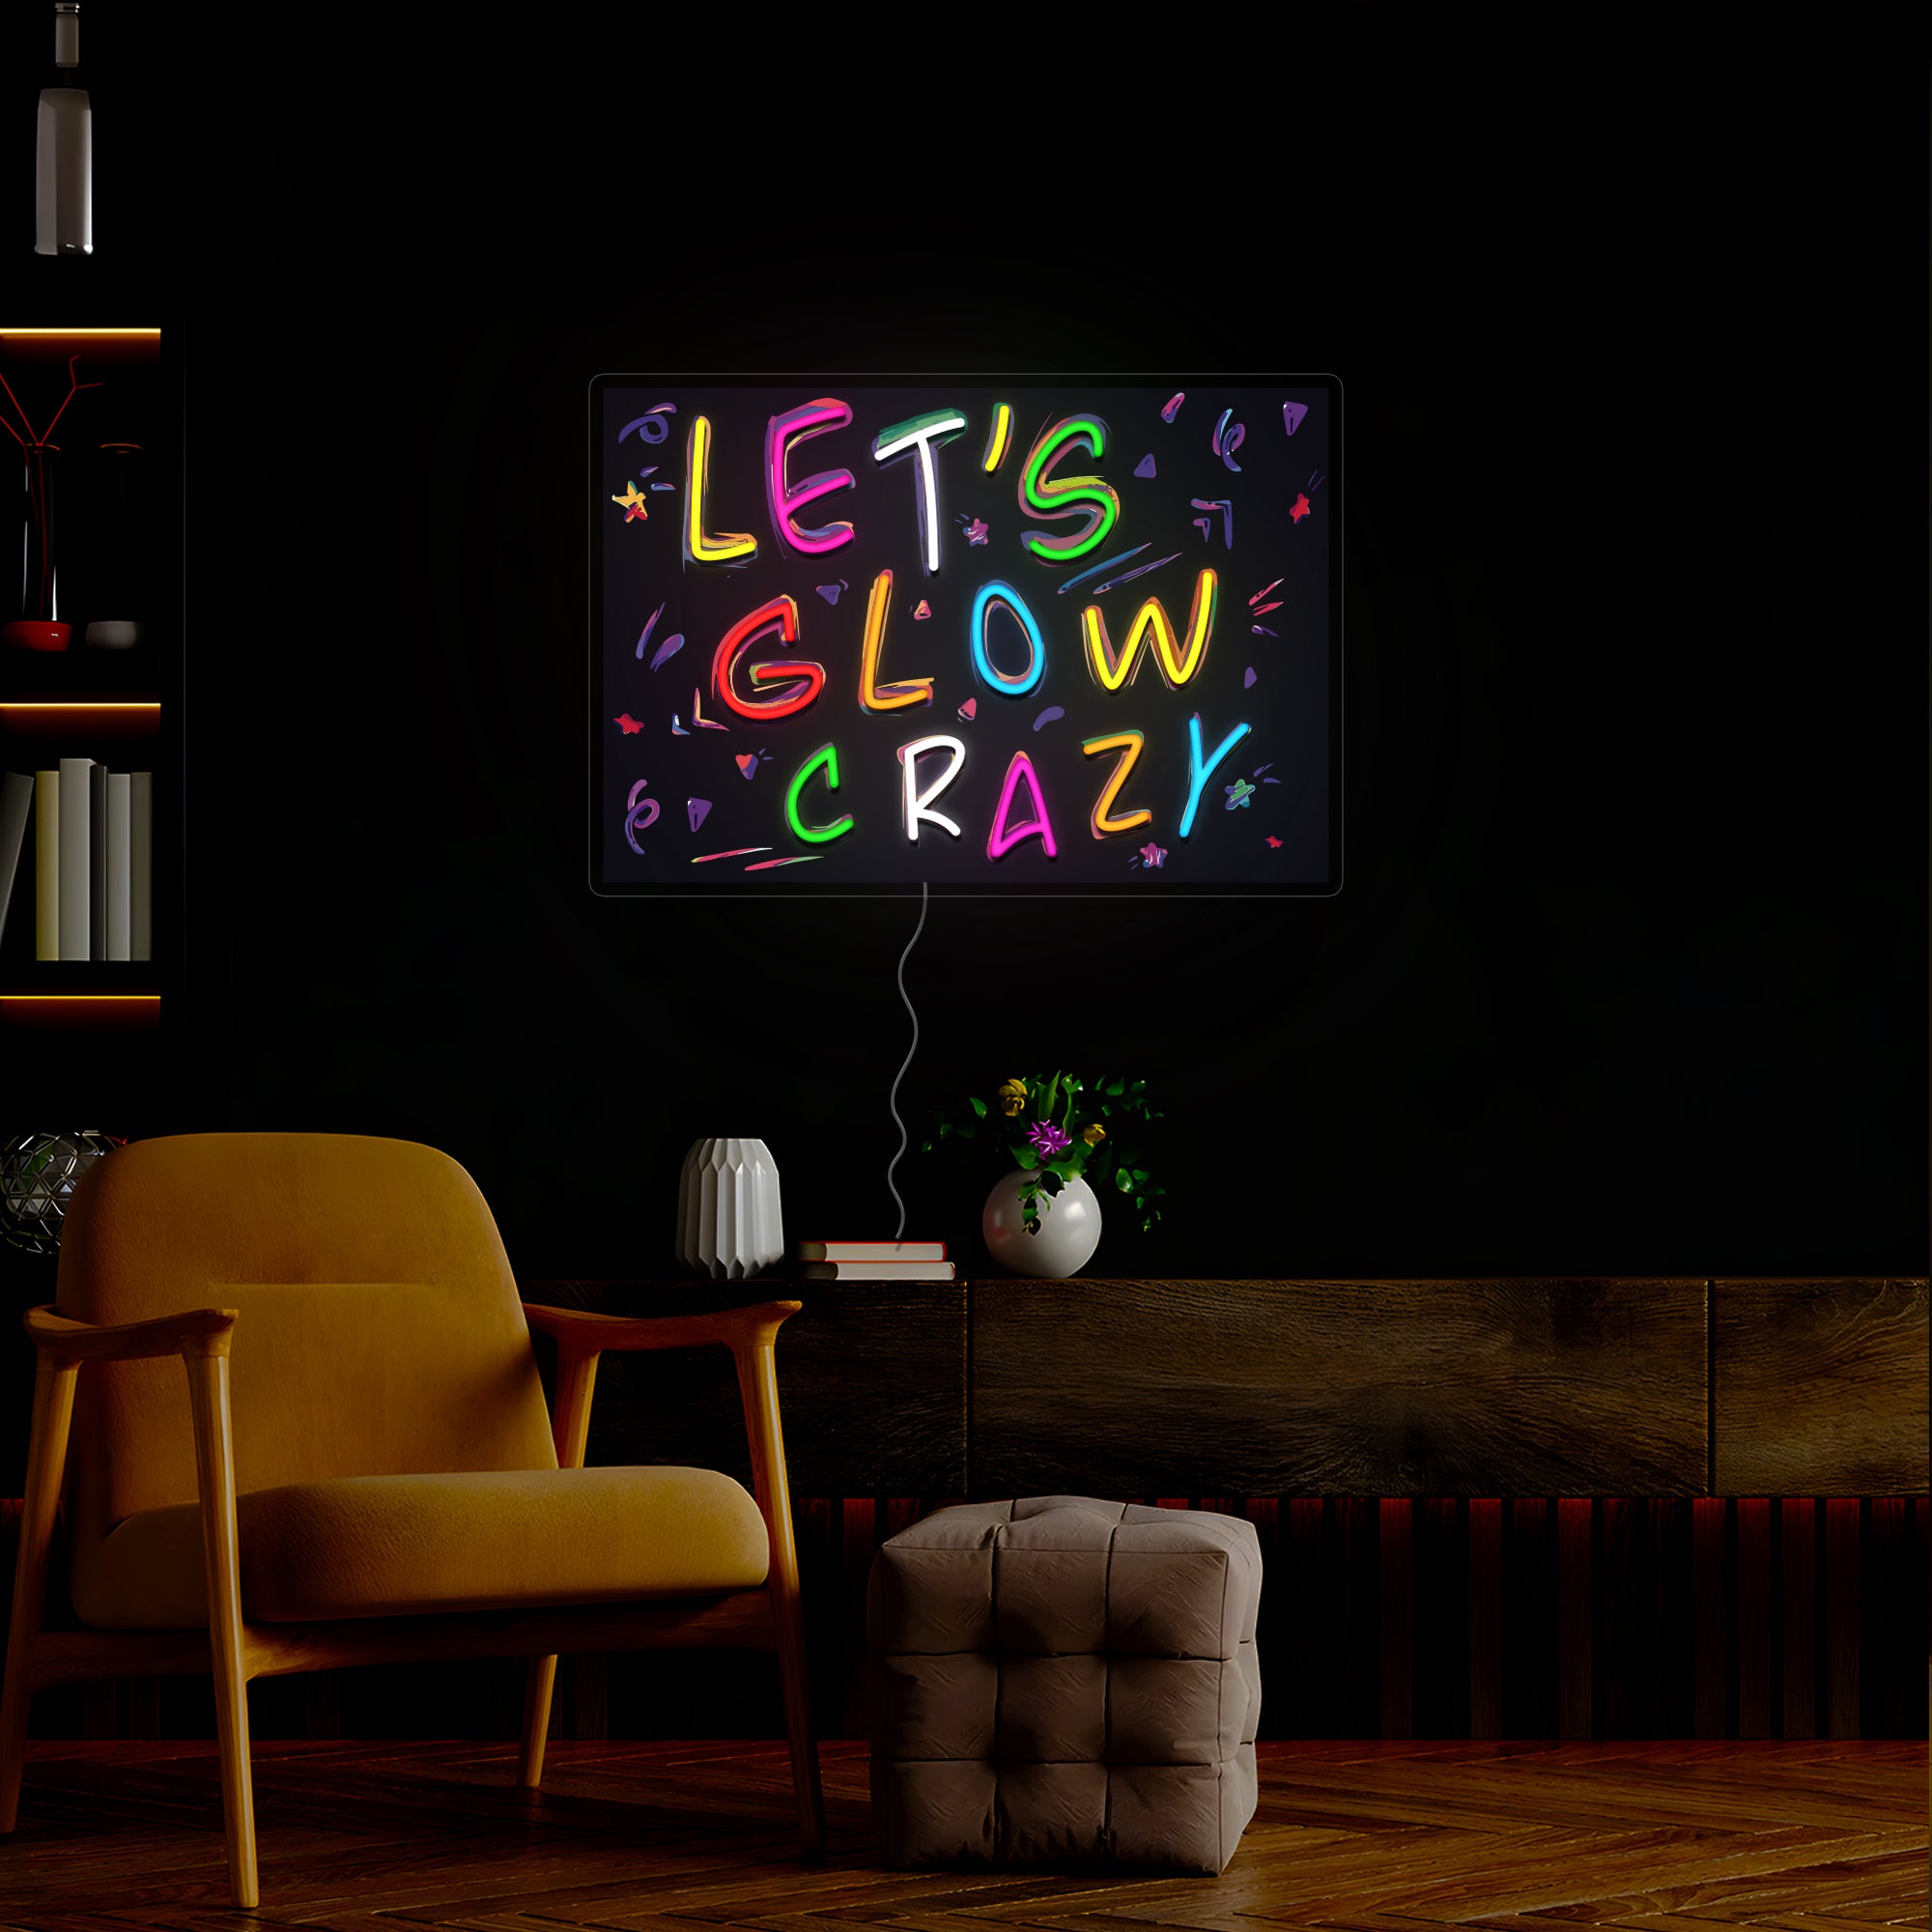 Let's Glow Crazy Neon Sign